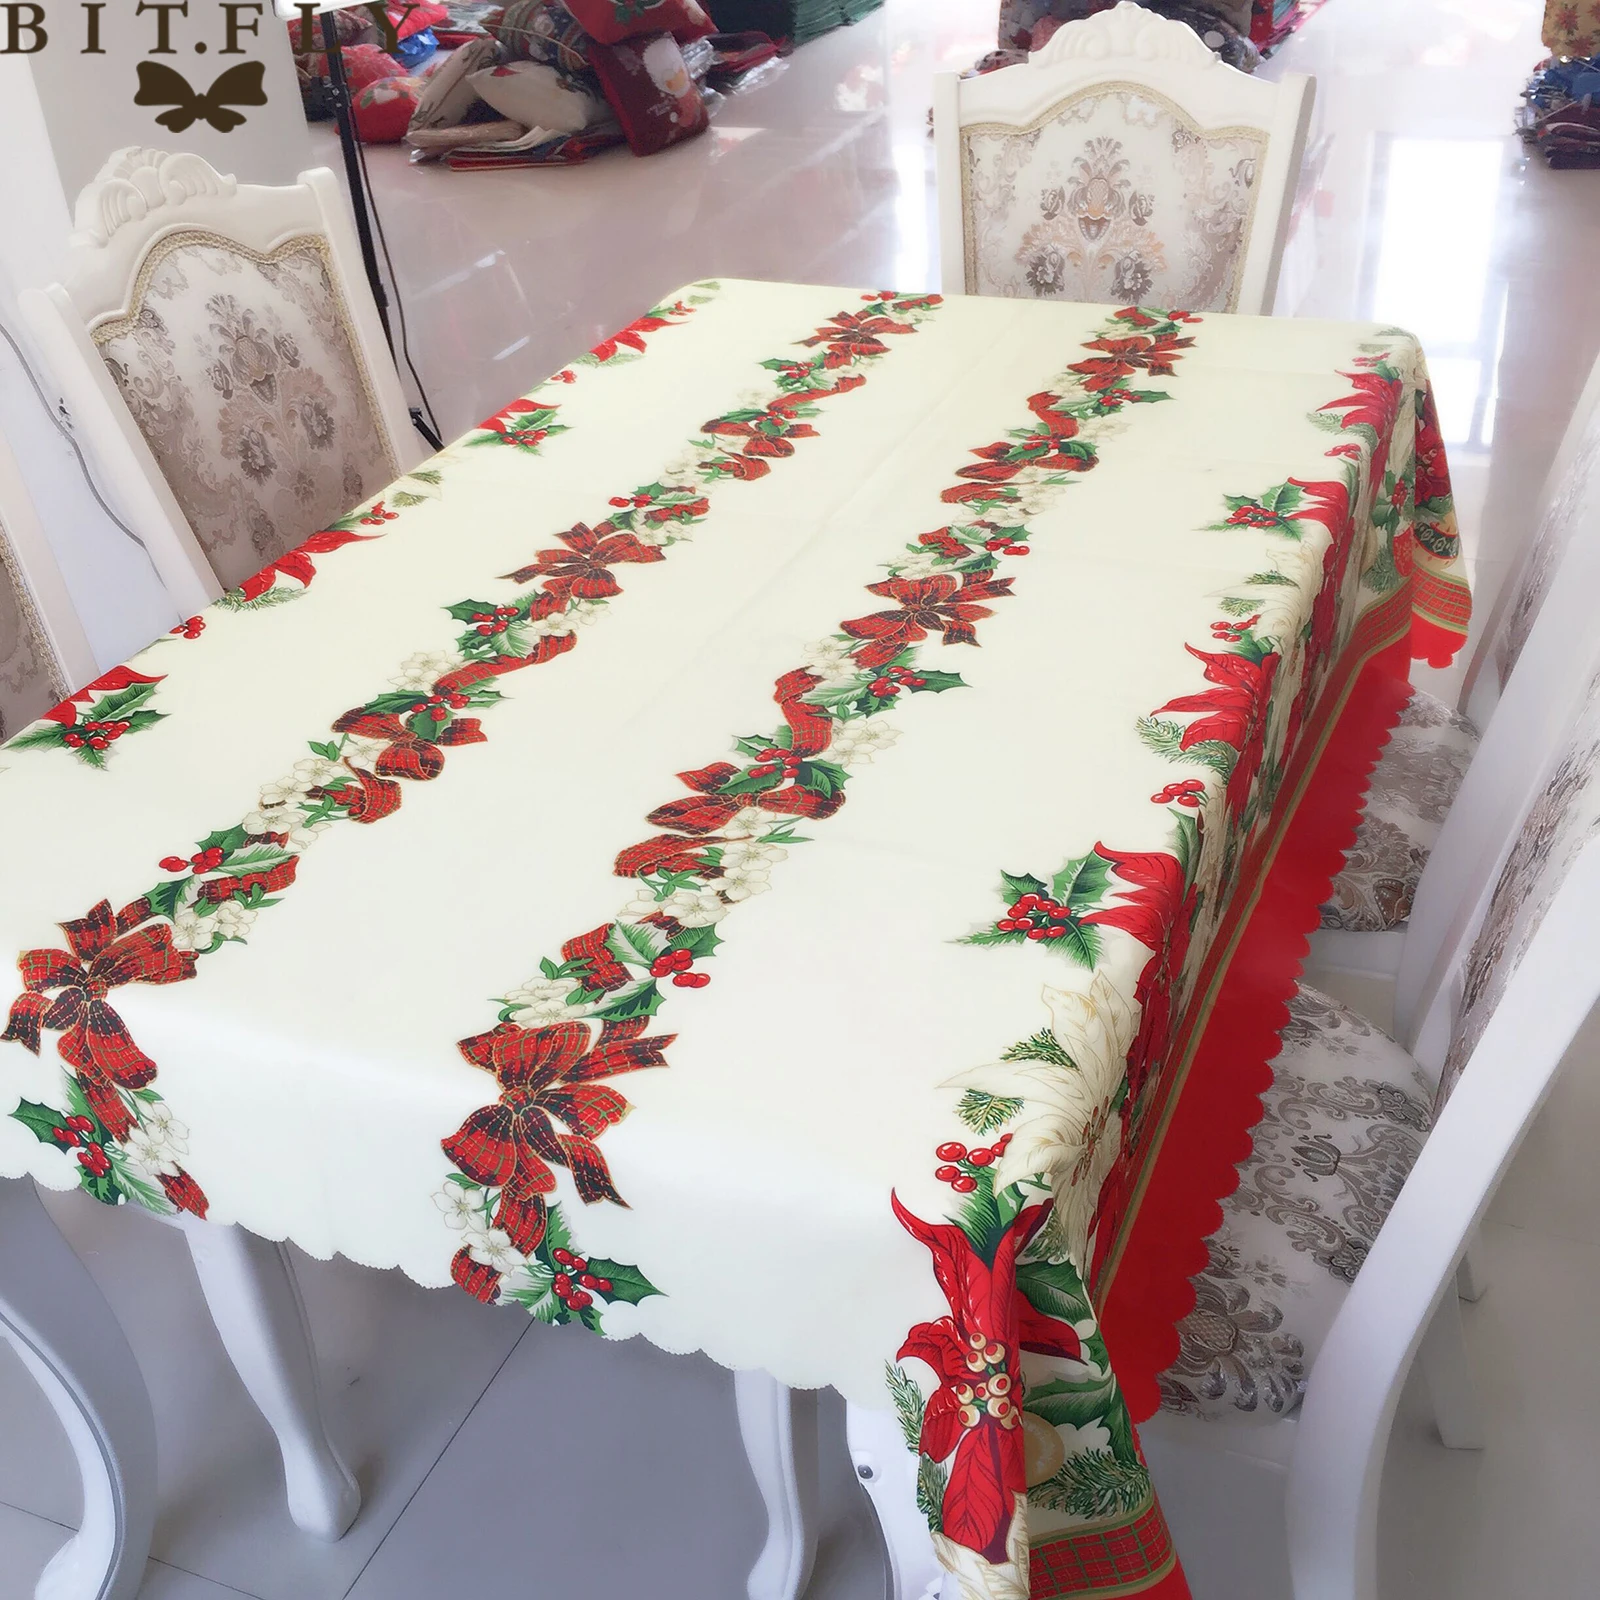 Фото Скатерть BITFLY для прямоугольного стола новогоднее и рождественское покрытие из